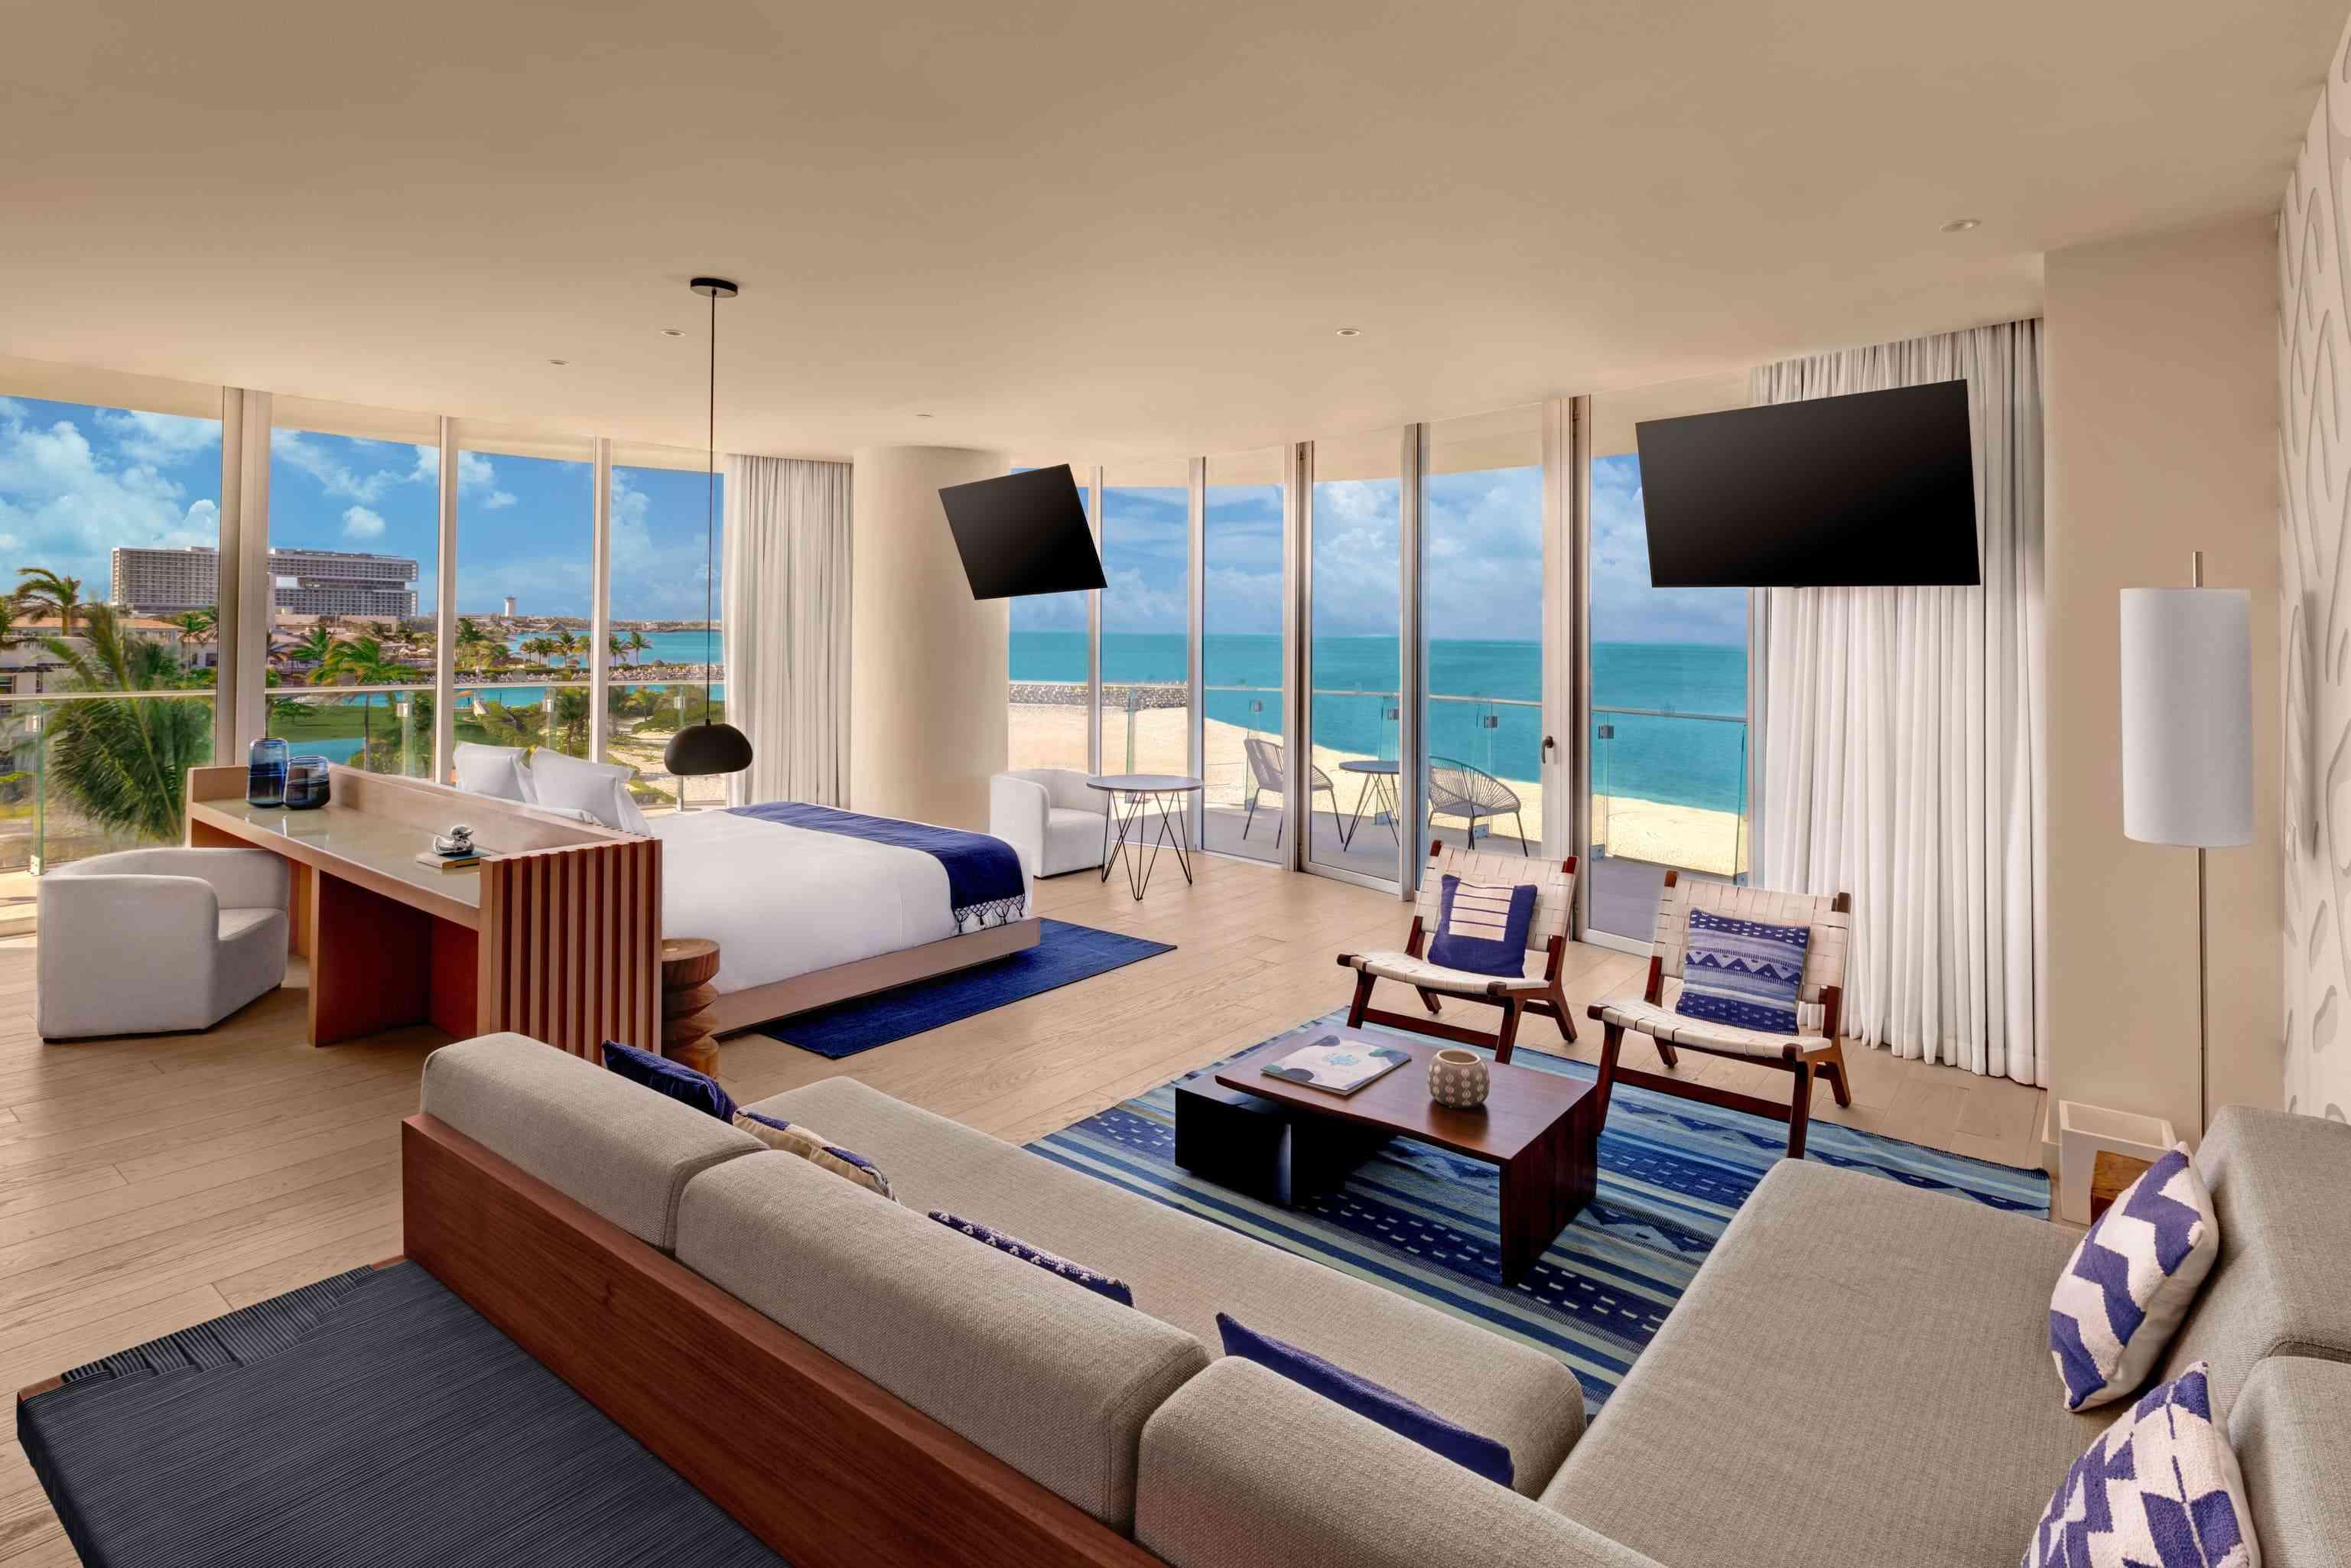 책상, 넓은 휴식 공간, TV 2대, 침대, 바다 전망의 발코니가 있는 프리미어 오션 프런트 1베드룸 스위트의 와이드 샷